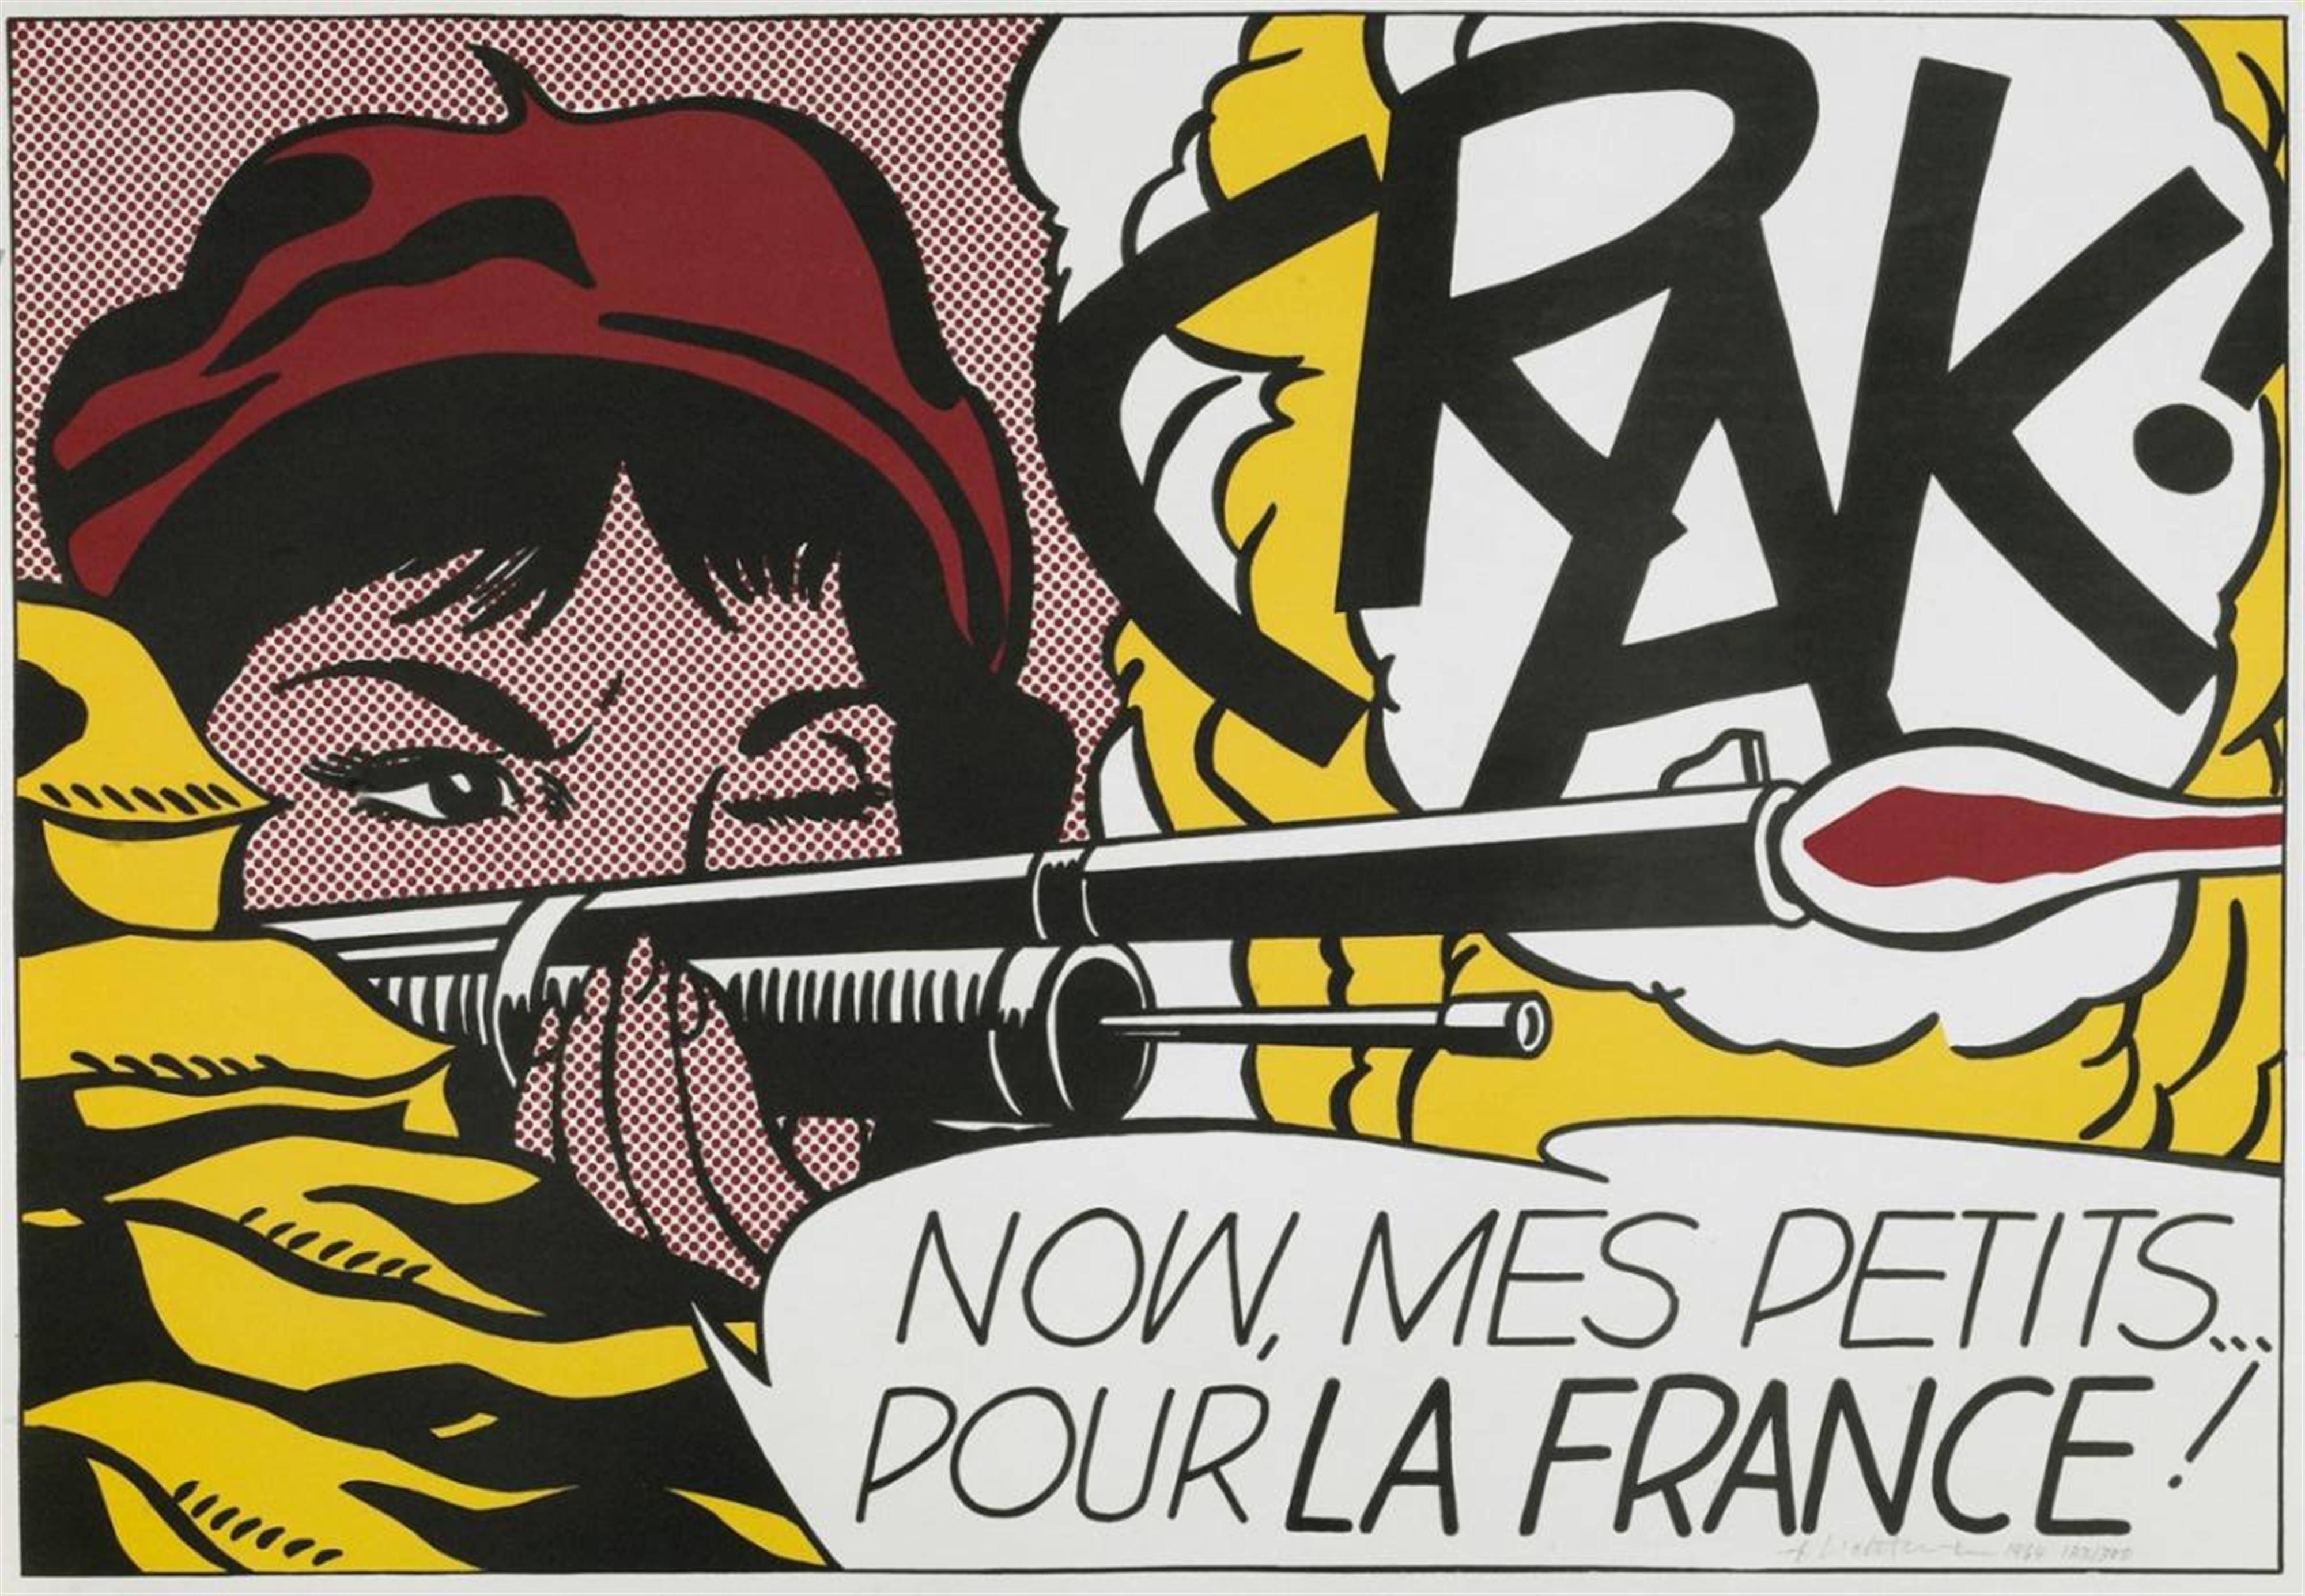 Roy Lichtenstein - Crak! - image-1